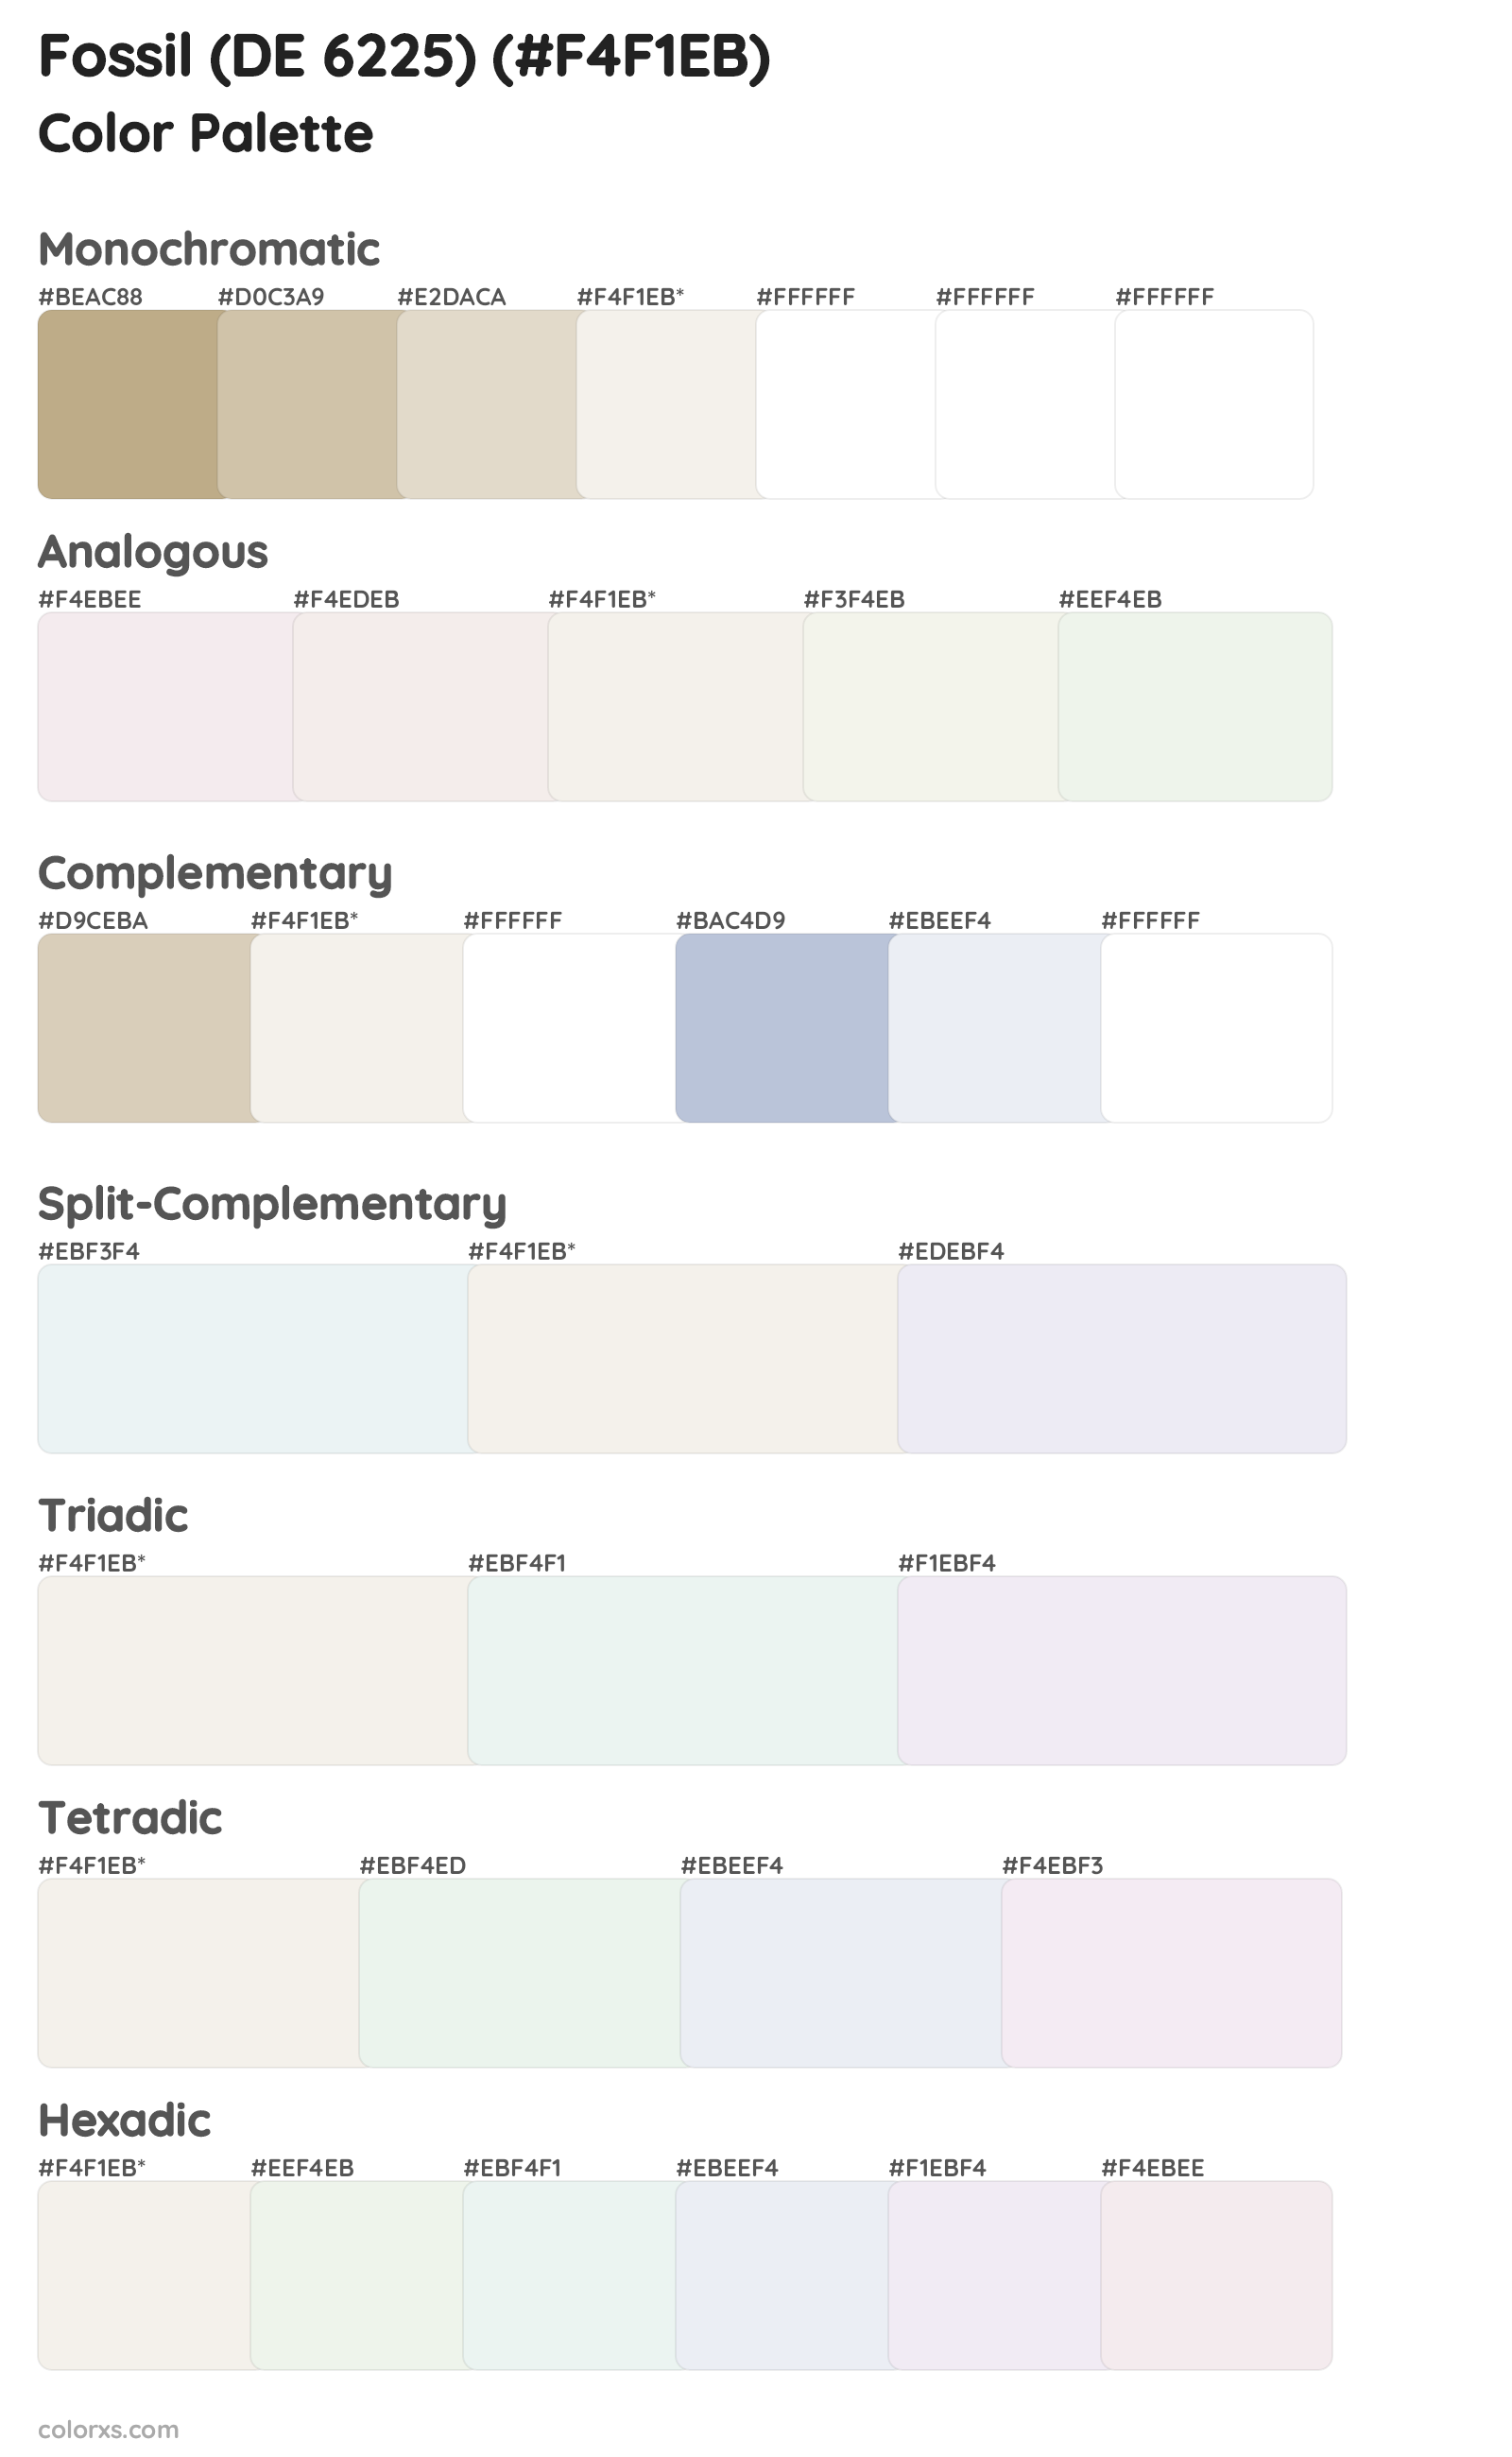 Fossil (DE 6225) Color Scheme Palettes